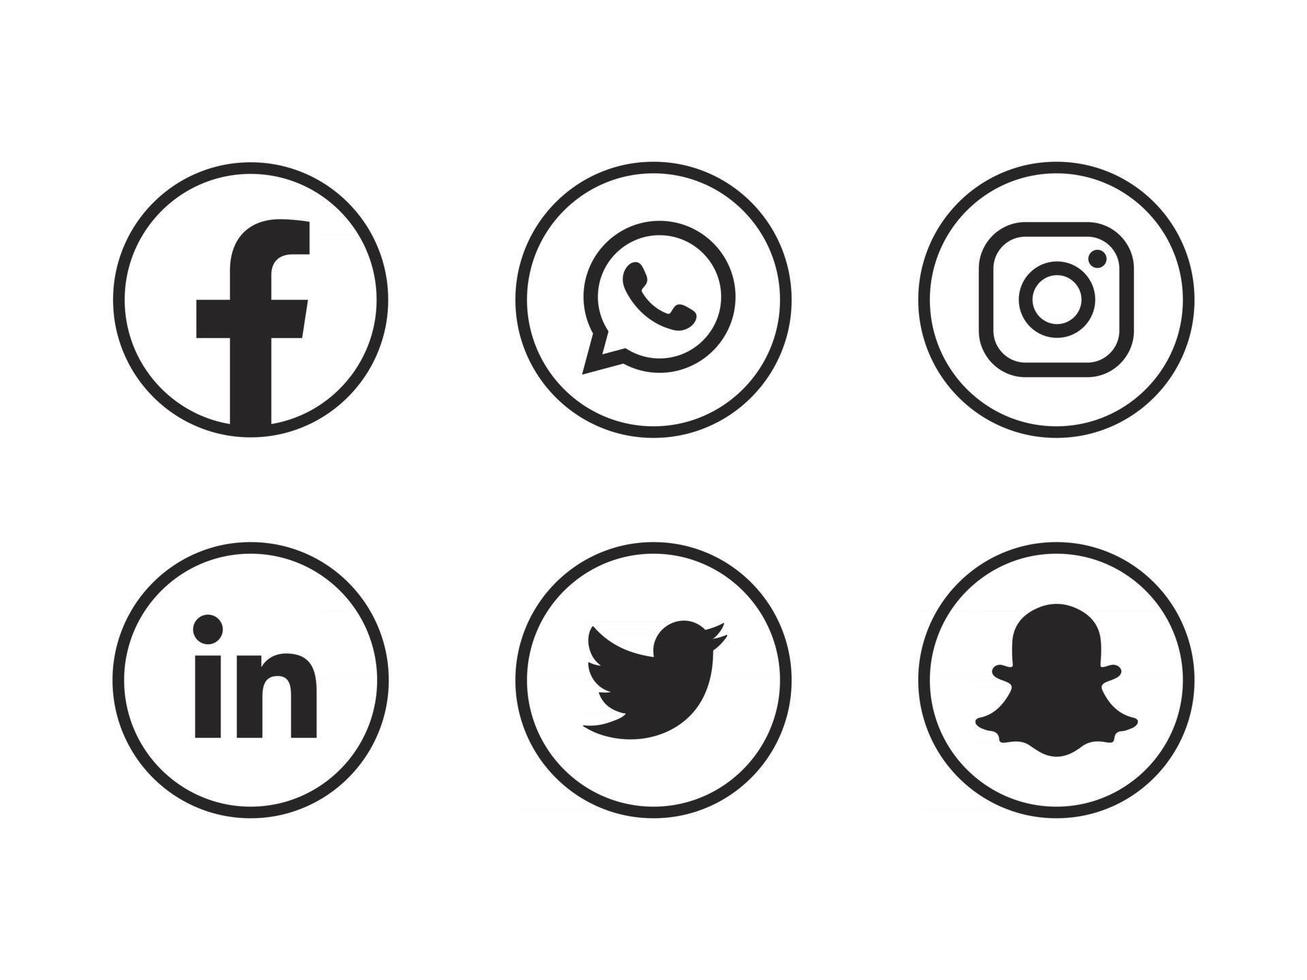 ícones de mídia social agrupam facebook instagram snapchat linkedin e outros botões de logotipo vetor